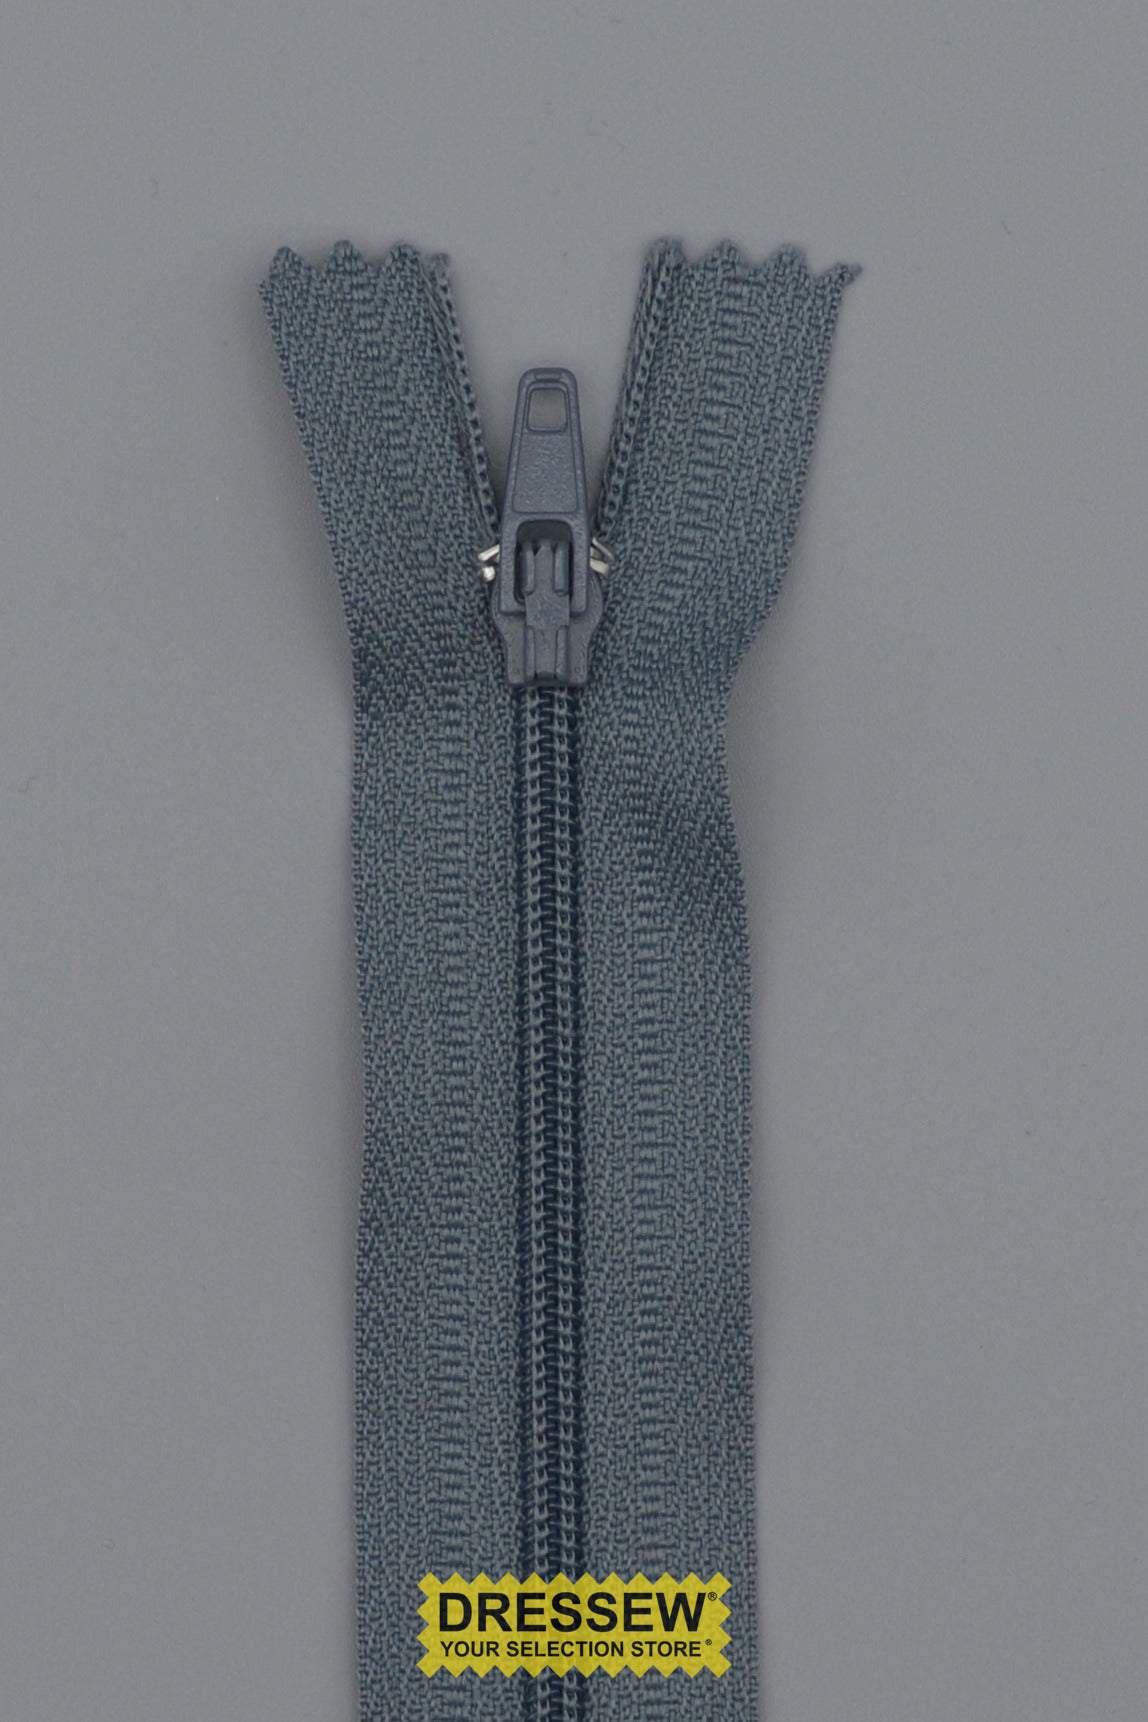 #3 Fine Coil Closed End Zipper 23cm (9") Rail